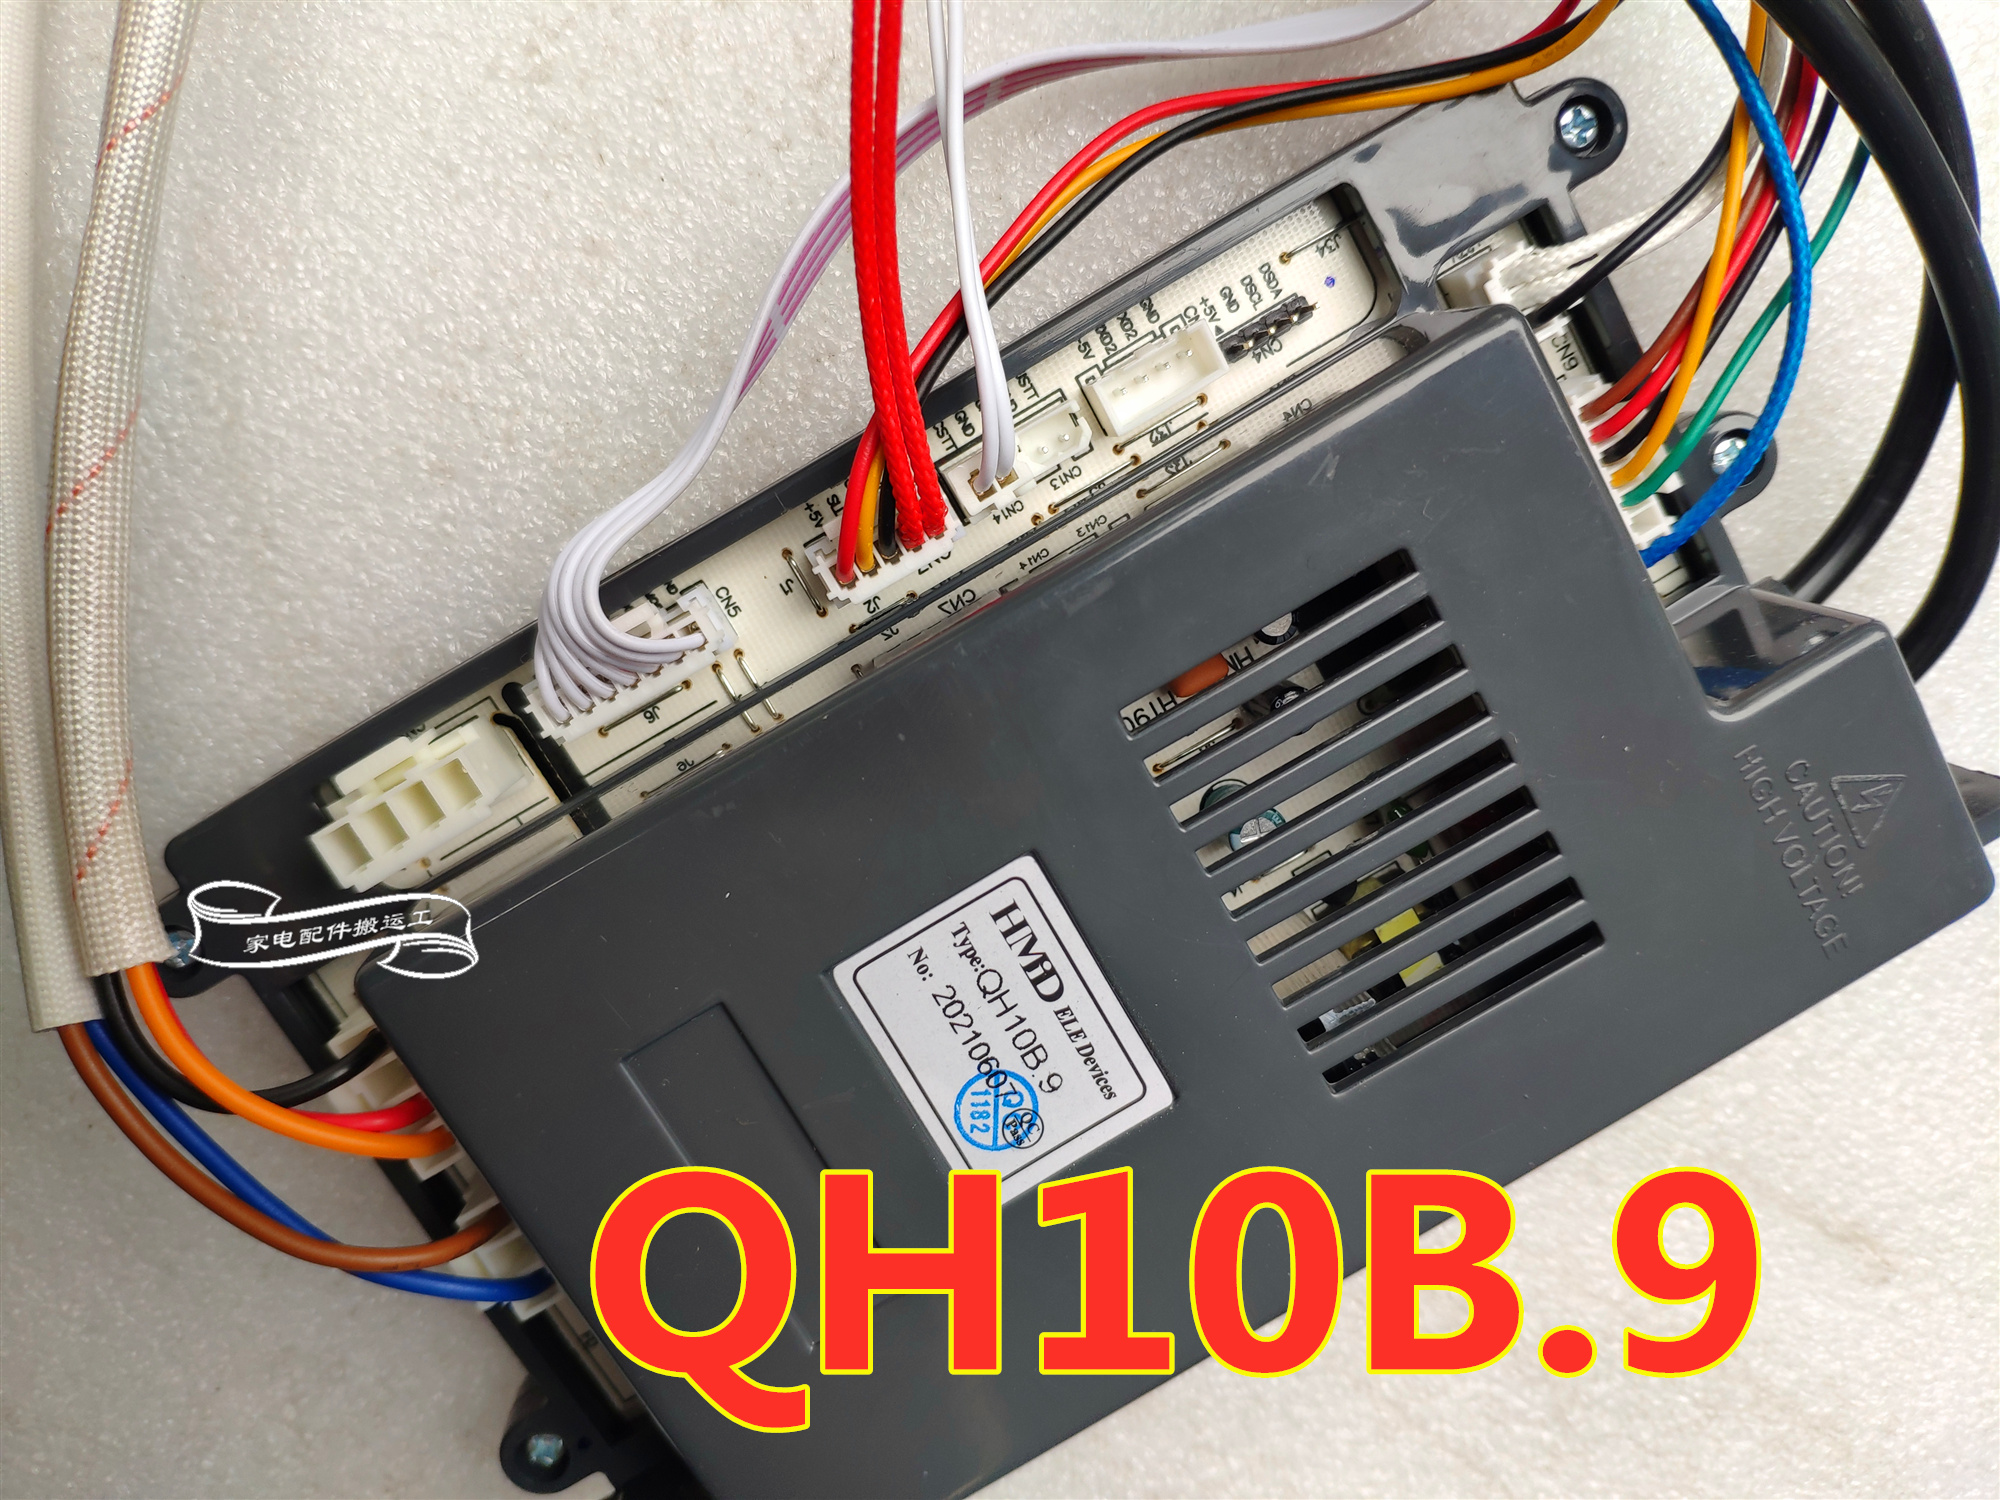 适用于火王燃气热水器JSQ24-HW12主板QHW10A.8a H030显示屏P062C-Taobao